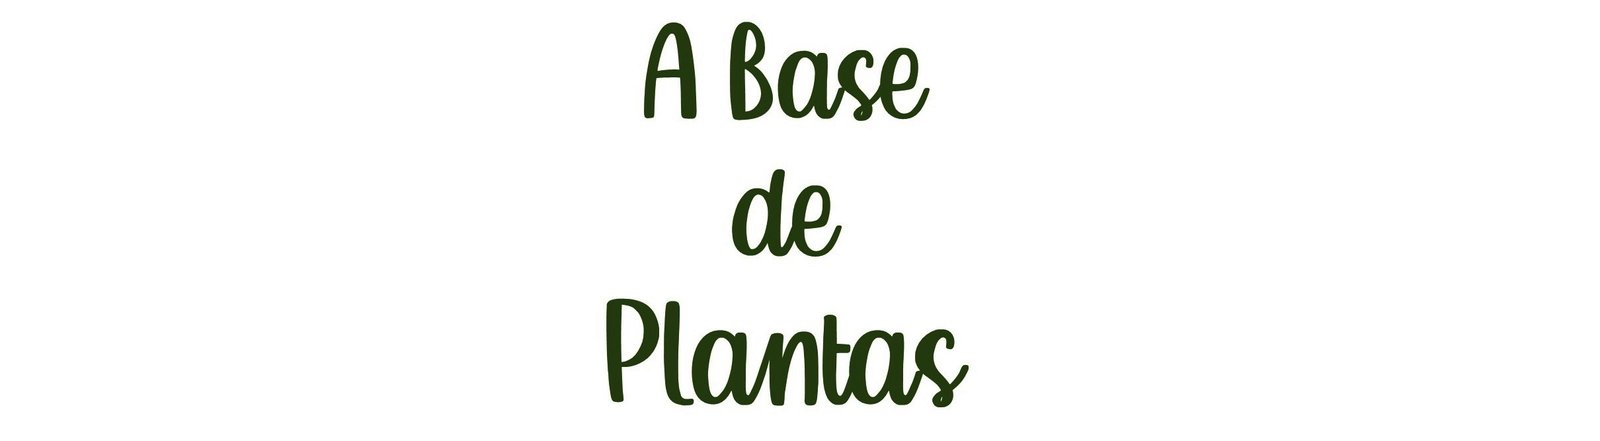 a base de plantas